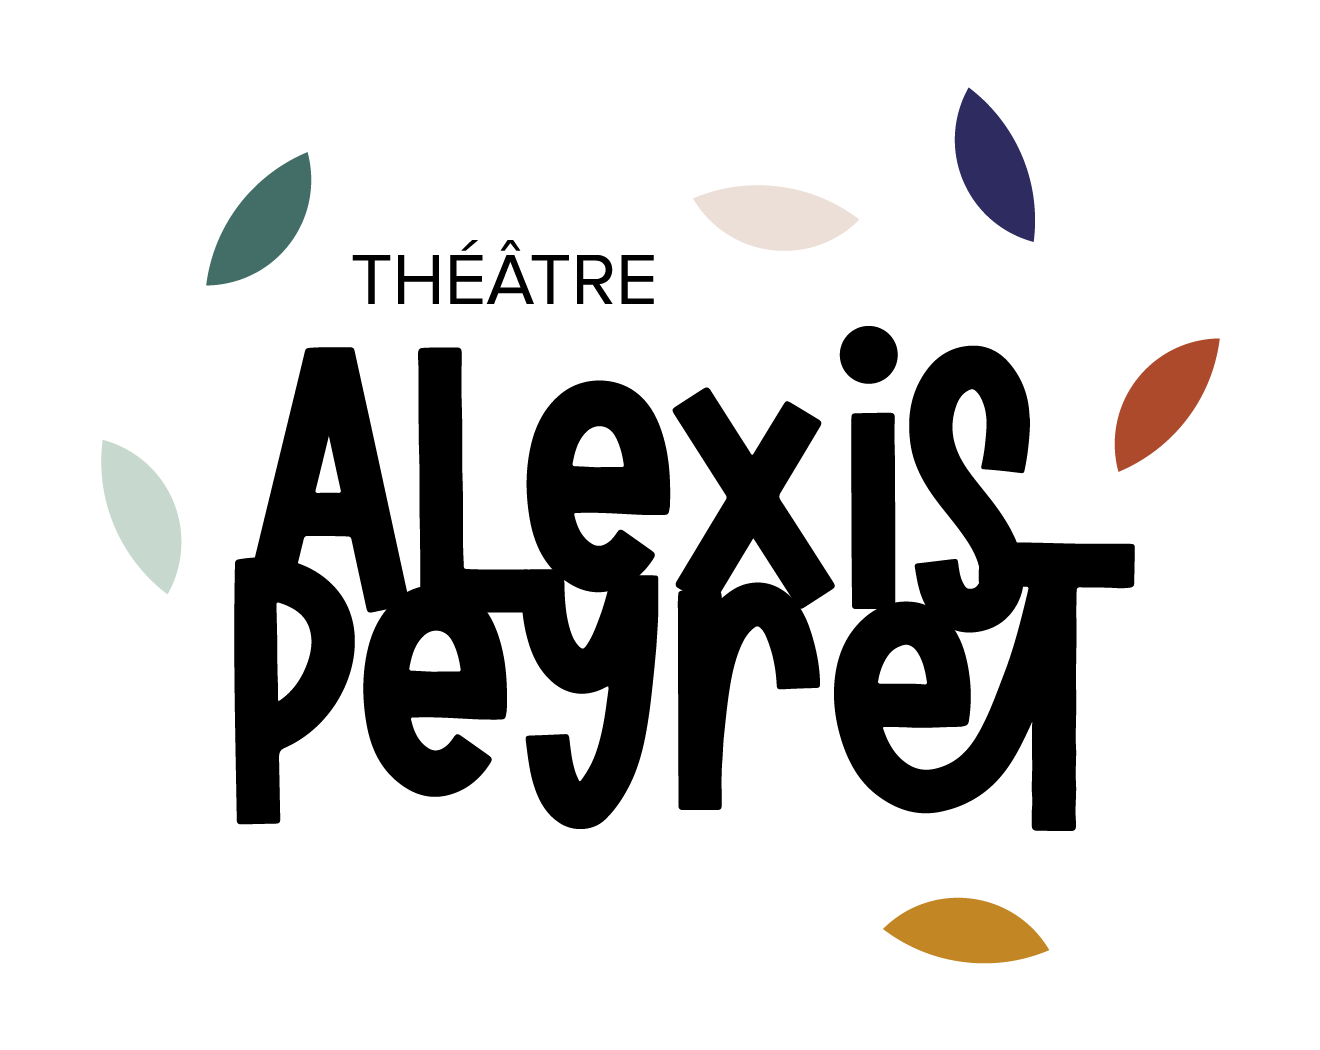 Centre Alexis Peyret